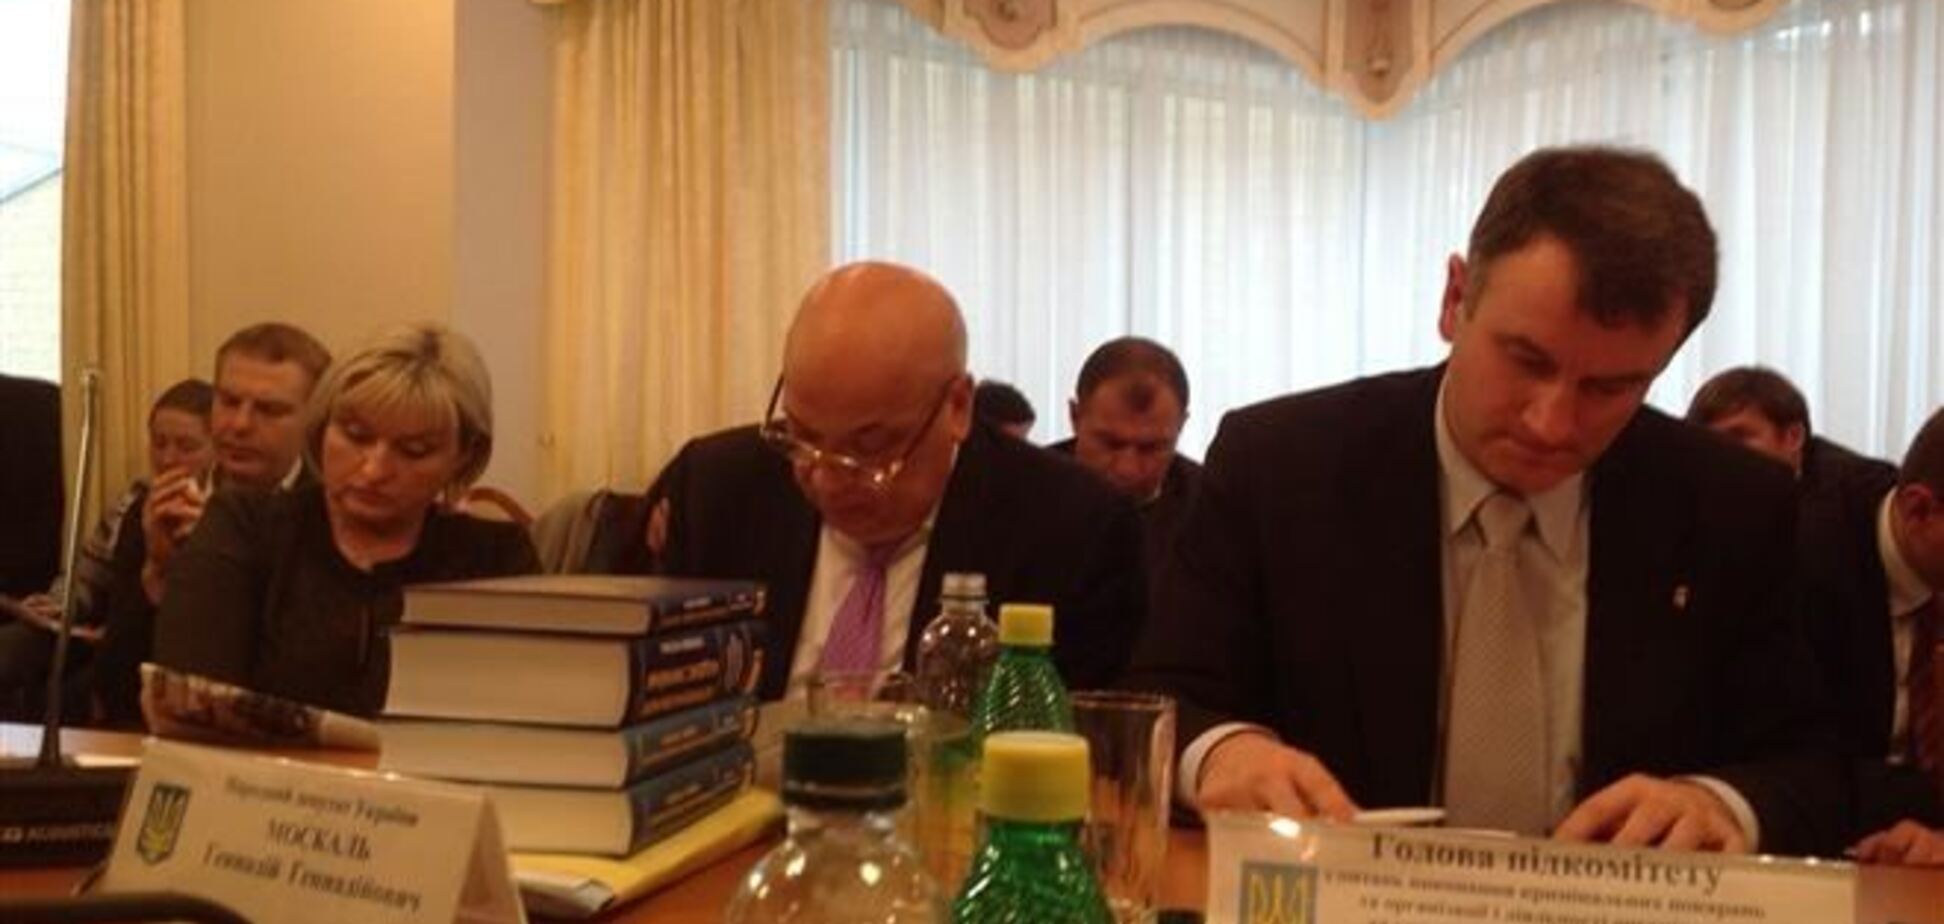 Робоча група приступила до обговорення статей 'законопроекту Тимошенко'